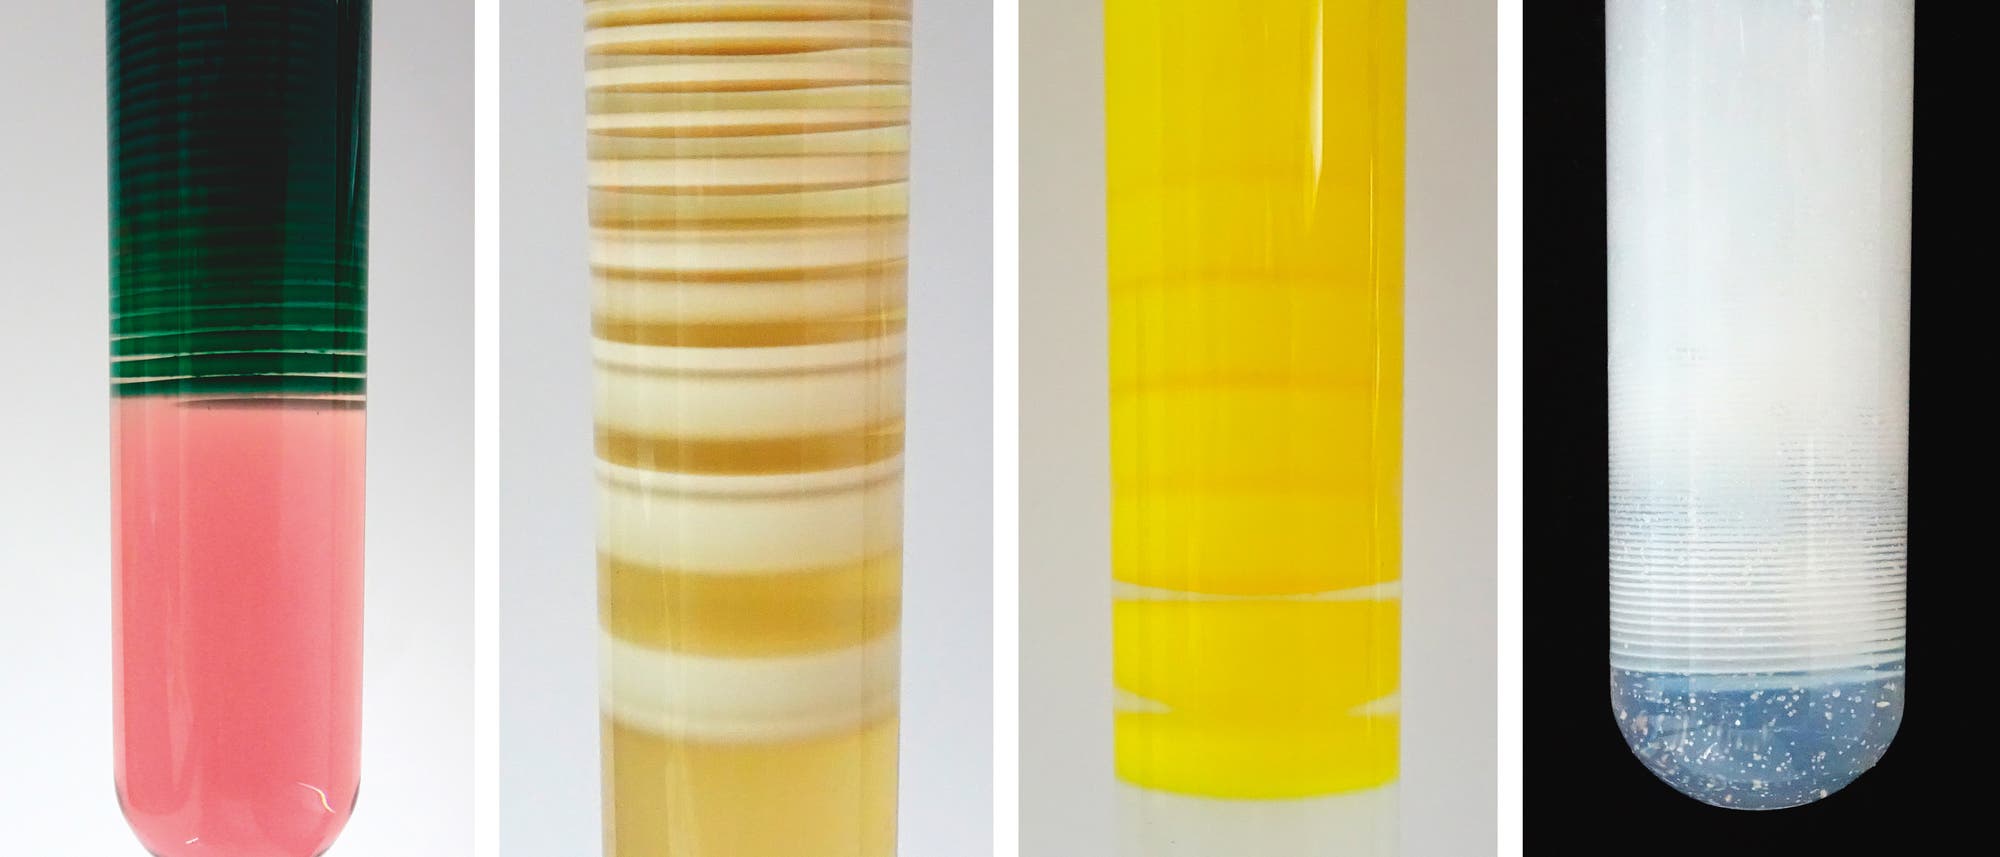 Hübsche Liesegang-Bänder lassen sich auch mit anderen Reagenzien erzeugen. In den hier gezeigten Beispielen bestehen sie aus Cobalthydroxid, Manganhydroxid, Bleiiodid und Bleihydroxid (von links nach rechts).